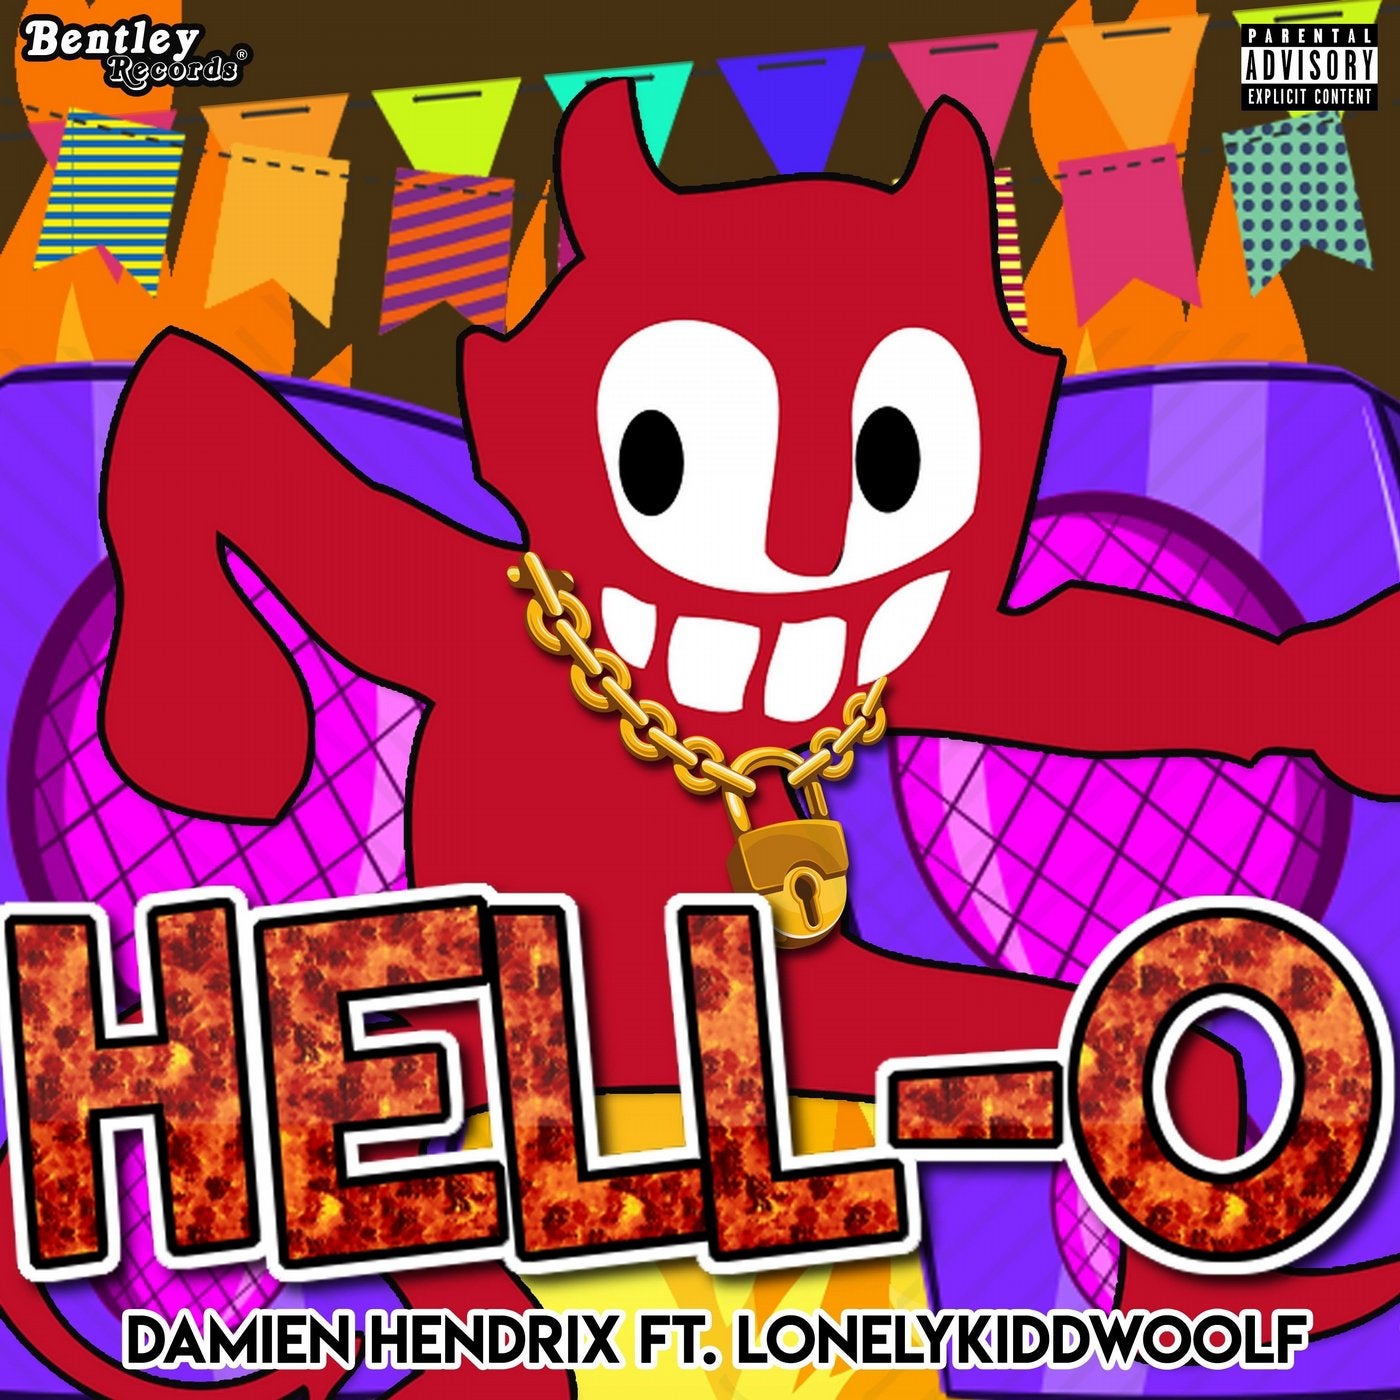 Hell-O (Prod. By Kidsushï)